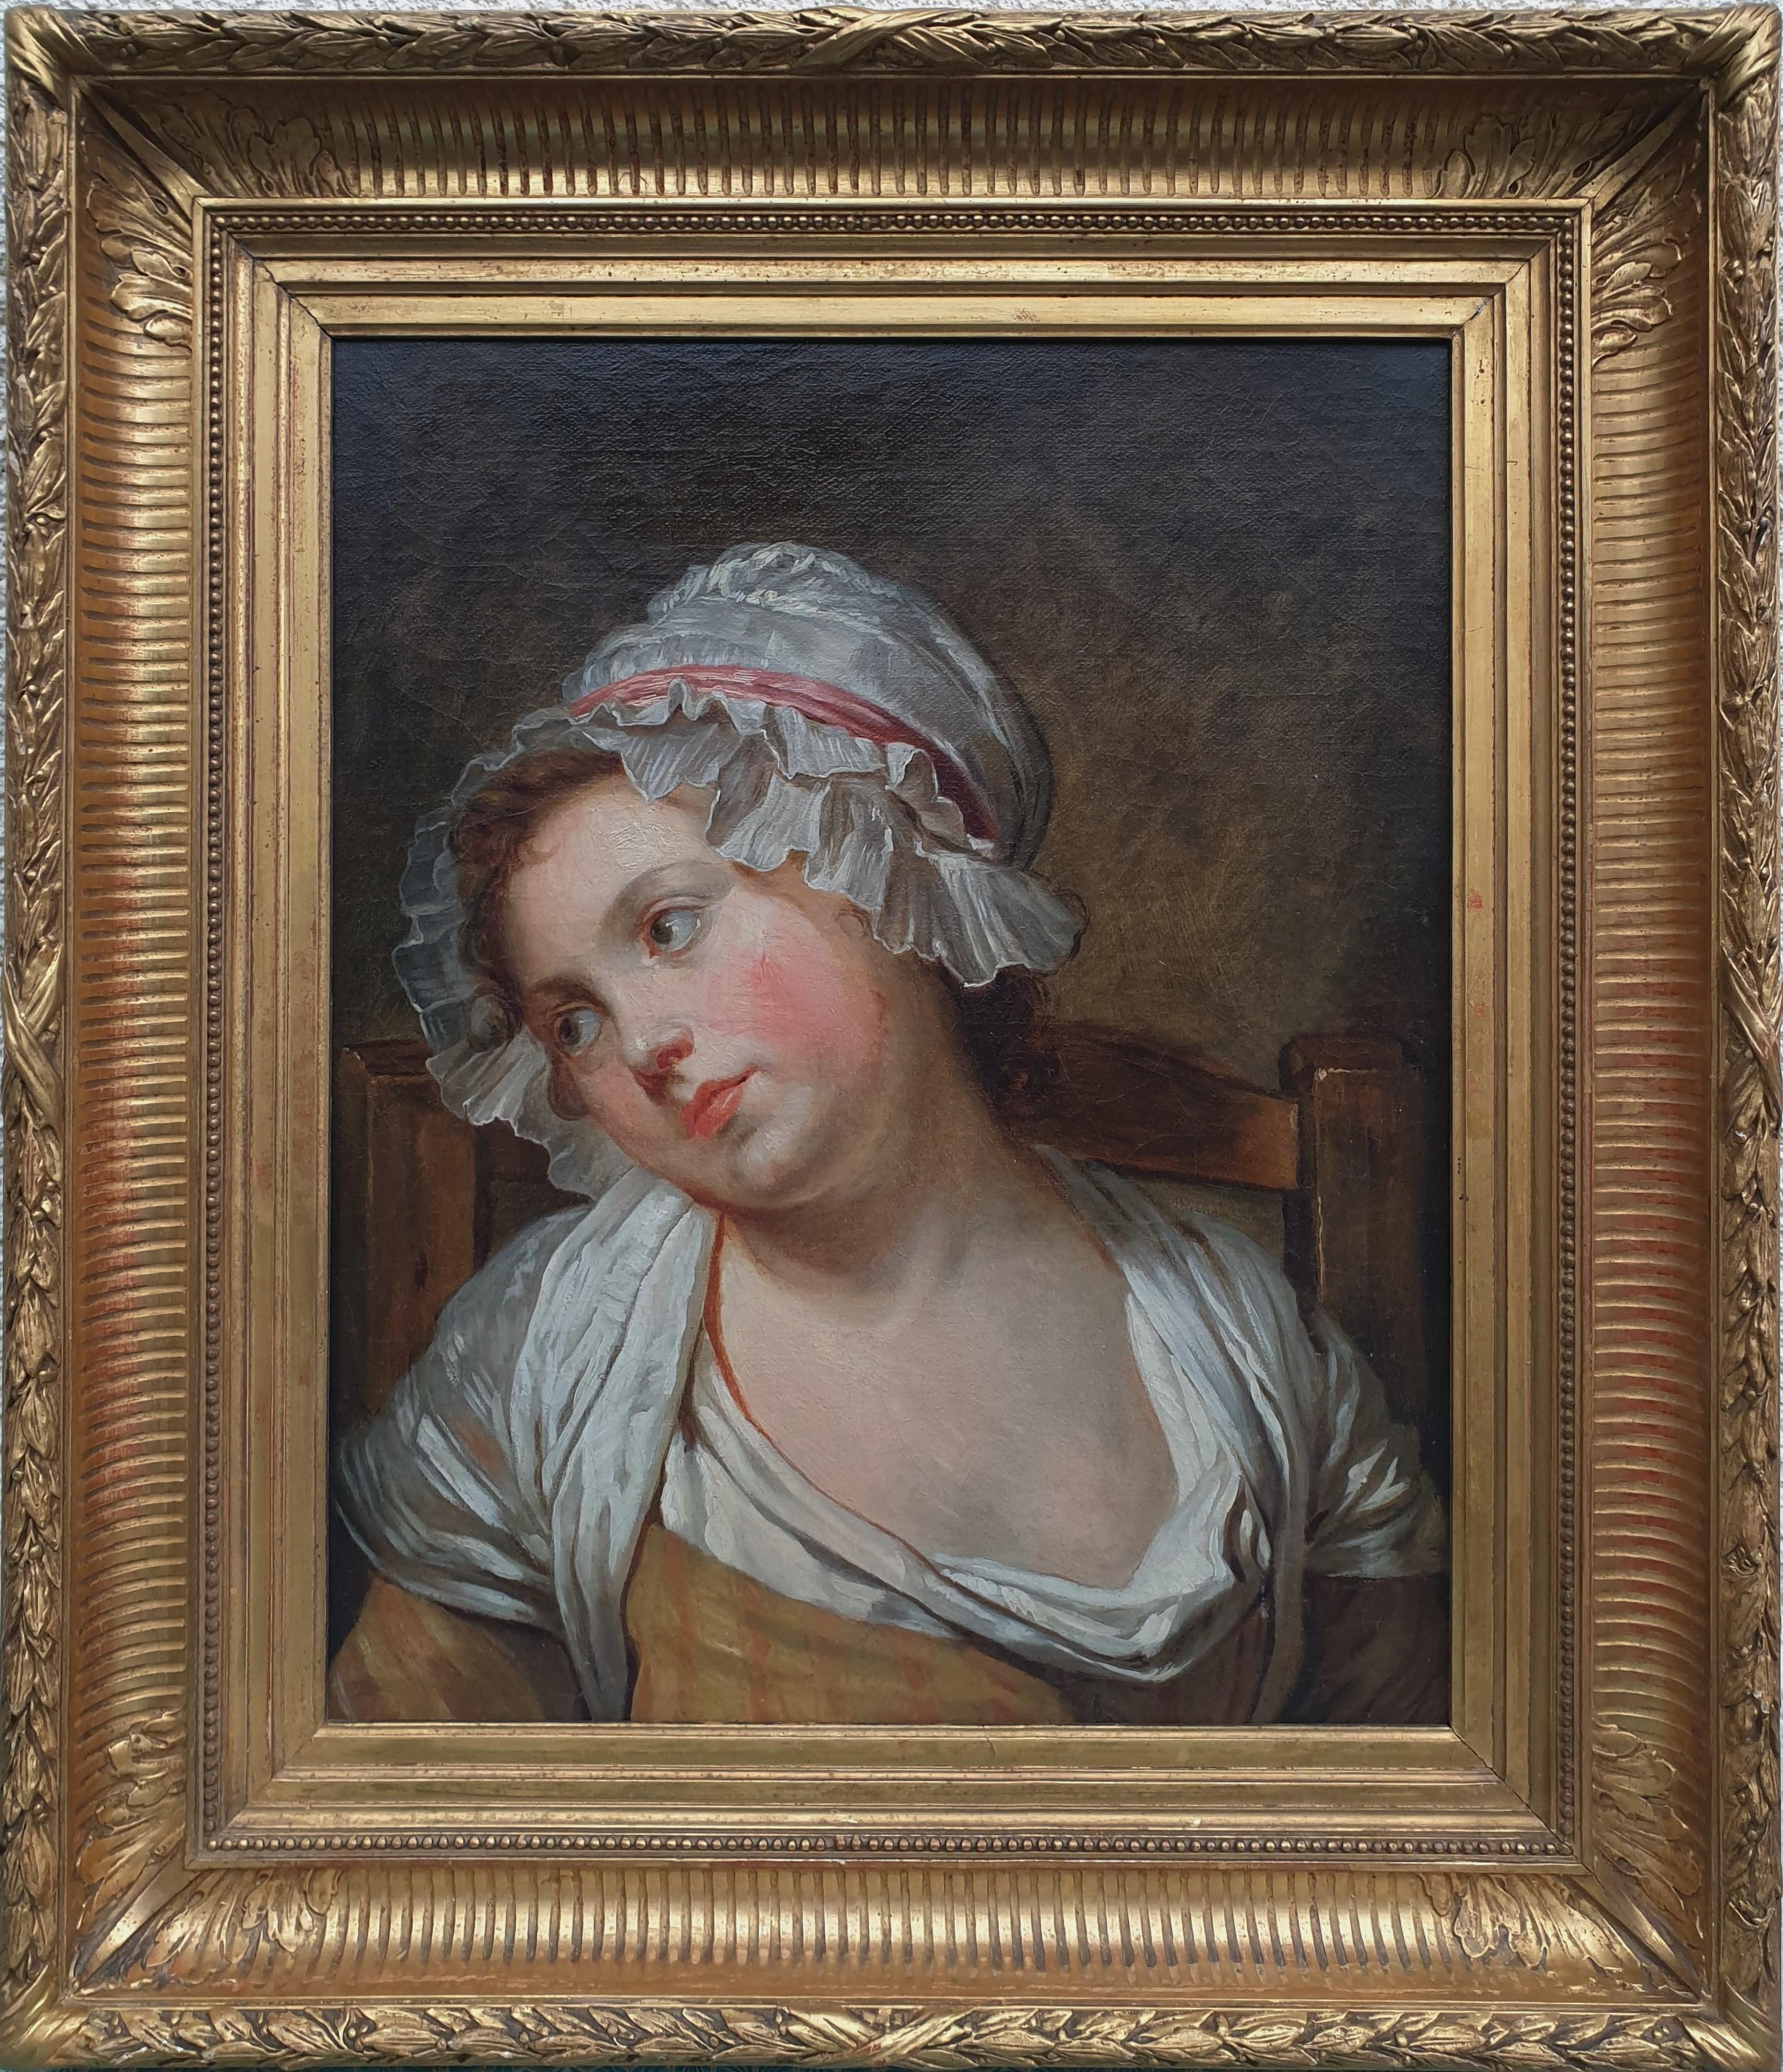 Jean-Baptiste Greuze Portrait Painting - 18th century french painting GREUZE Portrait of a young girl Oil on canvas